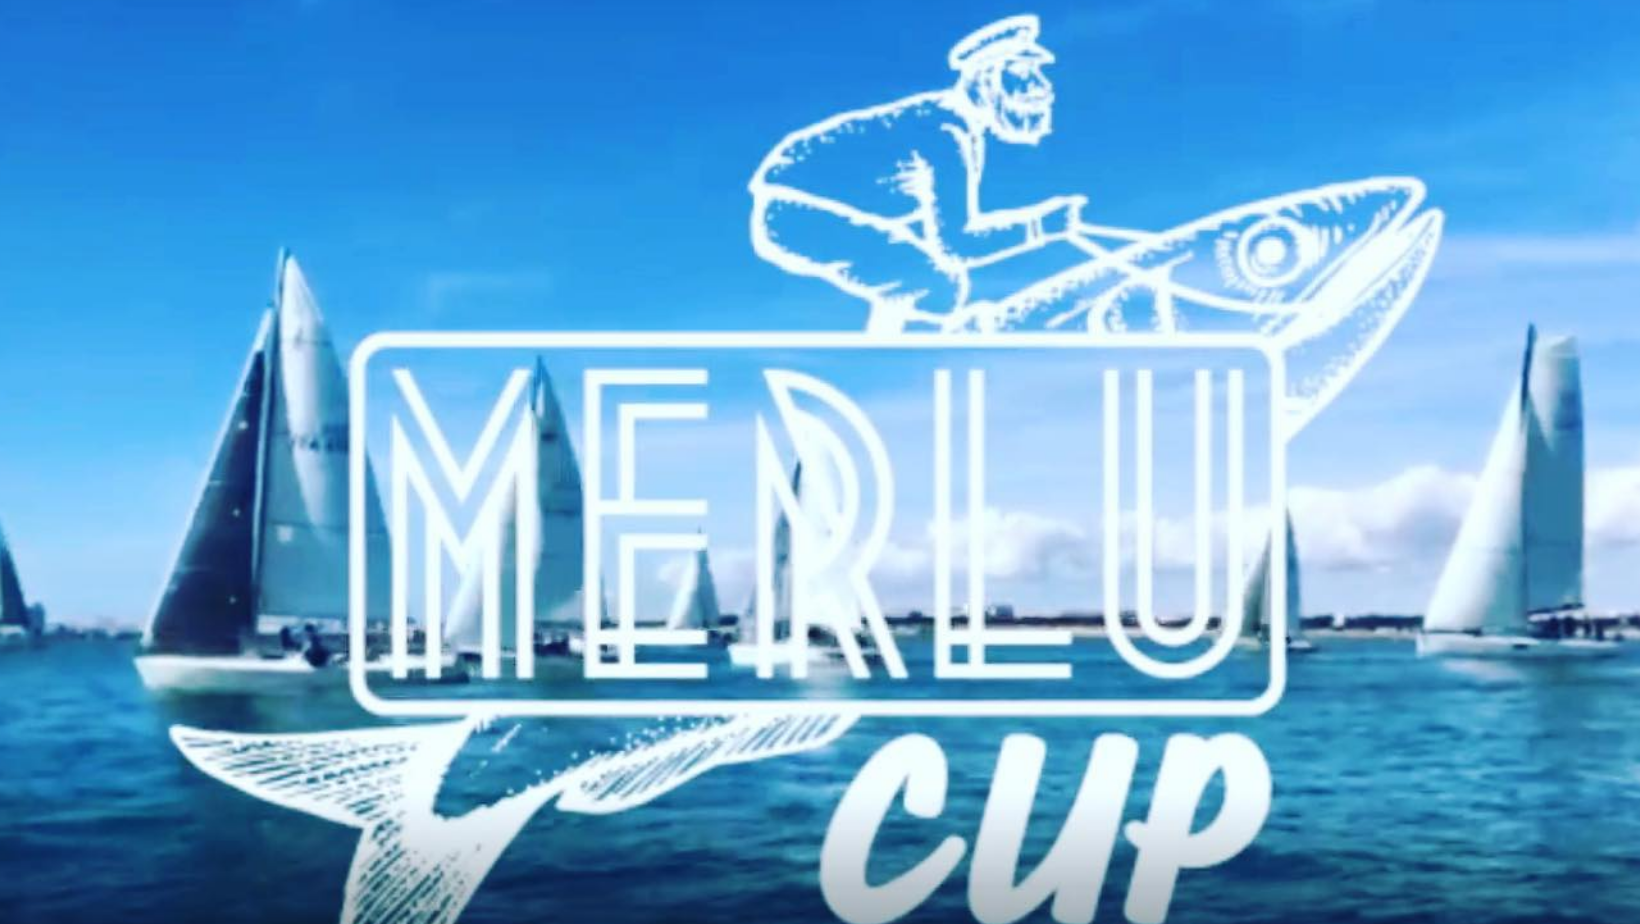 Lire la suite à propos de l’article MERLU’S CUP (17 et 18 septembre)